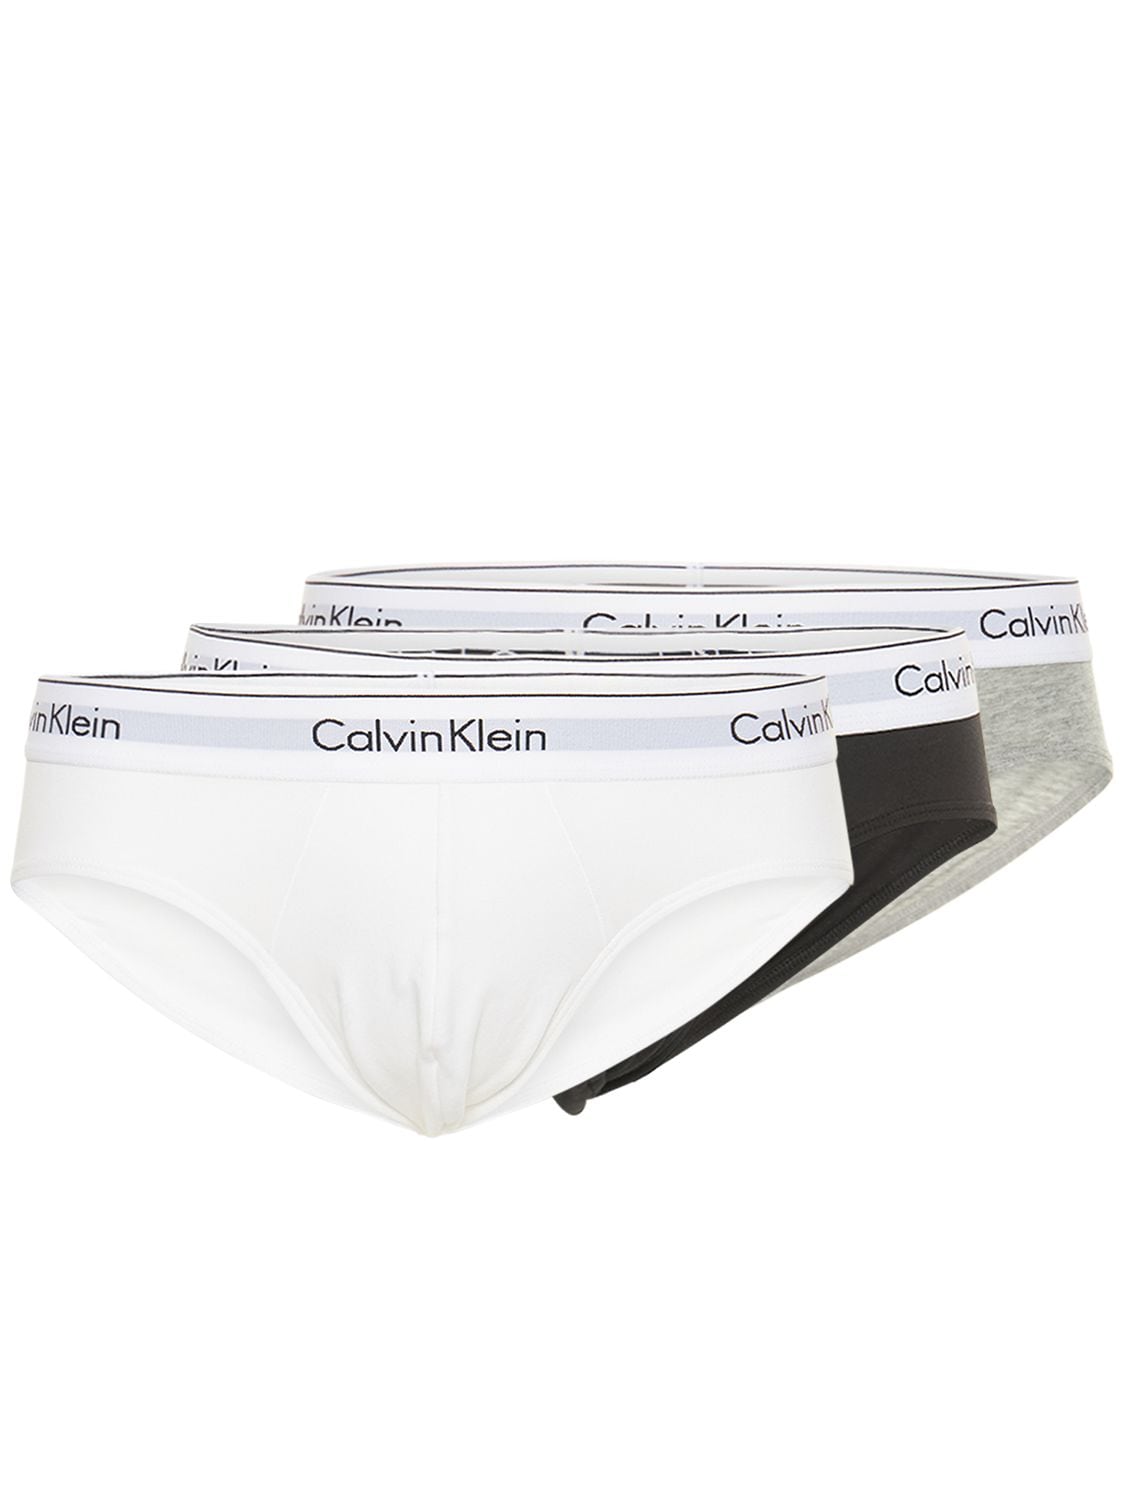 CALVIN KLEIN UNDERWEAR LOGO棉质内裤3条套装